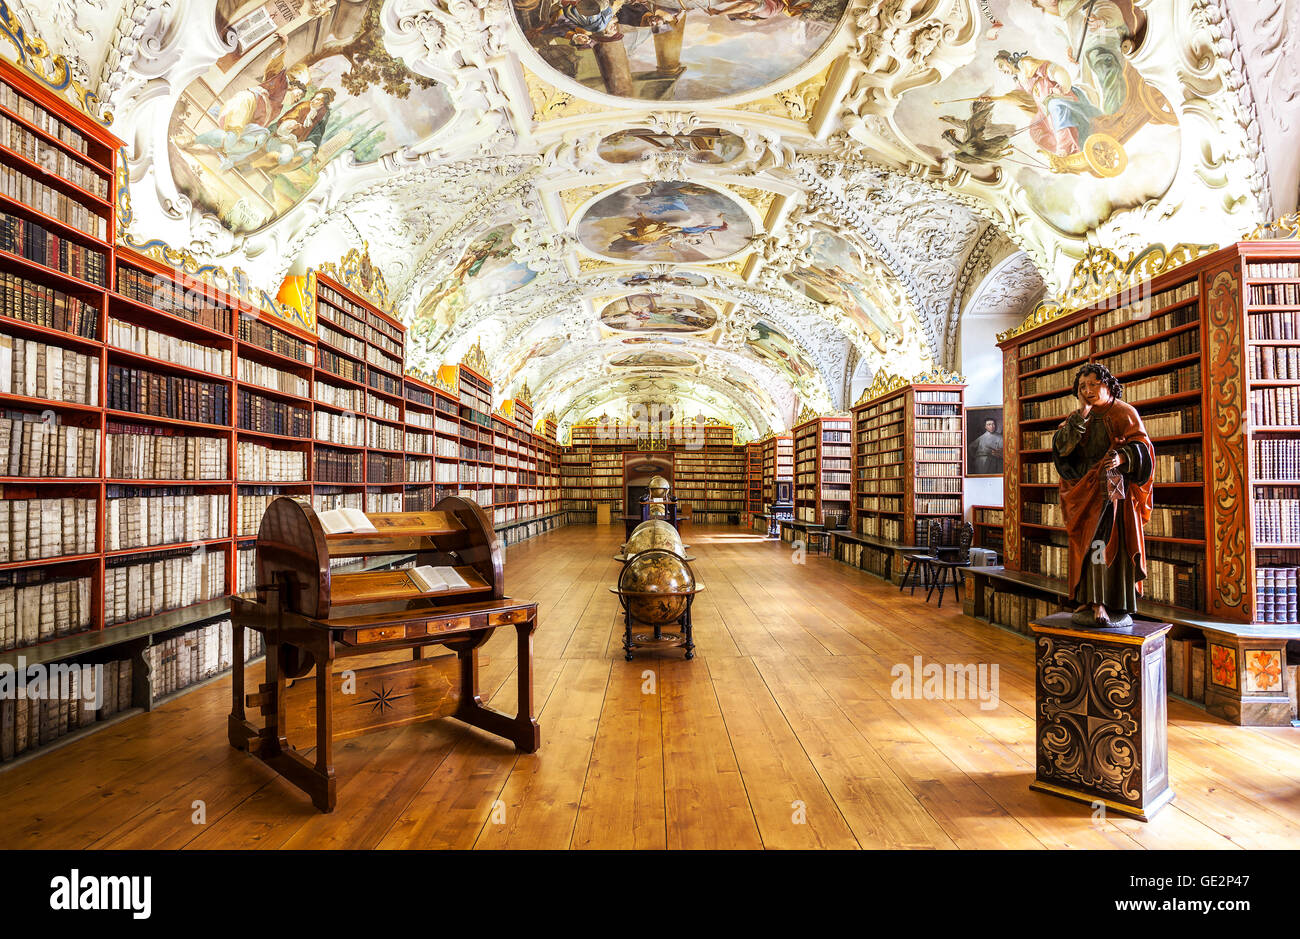 PRAGUE, RÉPUBLIQUE TCHÈQUE - 15 juin 2014 : La salle théologique dans le monastère de Strahov à Prague, l'un des meilleurs intérieurs de la bibliothèque Banque D'Images